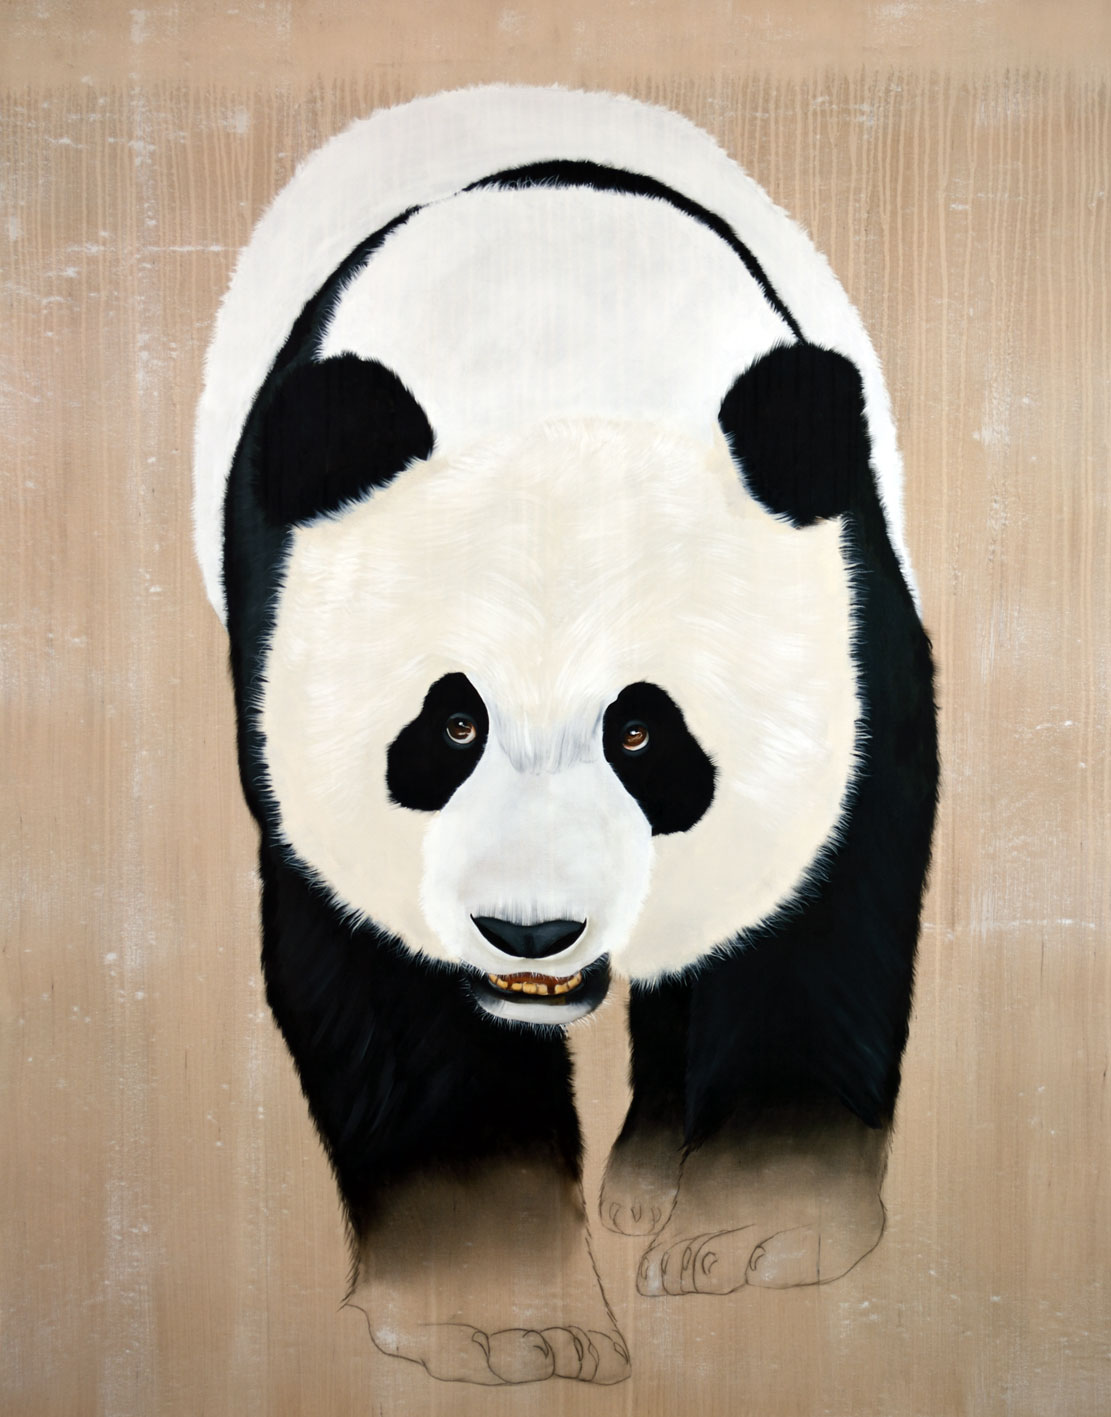 AILUROPODA MELANOLEUCA panda-geant-ailuropoda-melanoleuca-extinction-protégé-disparition Thierry Bisch artiste peintre contemporain animaux tableau art décoration biodiversité conservation 